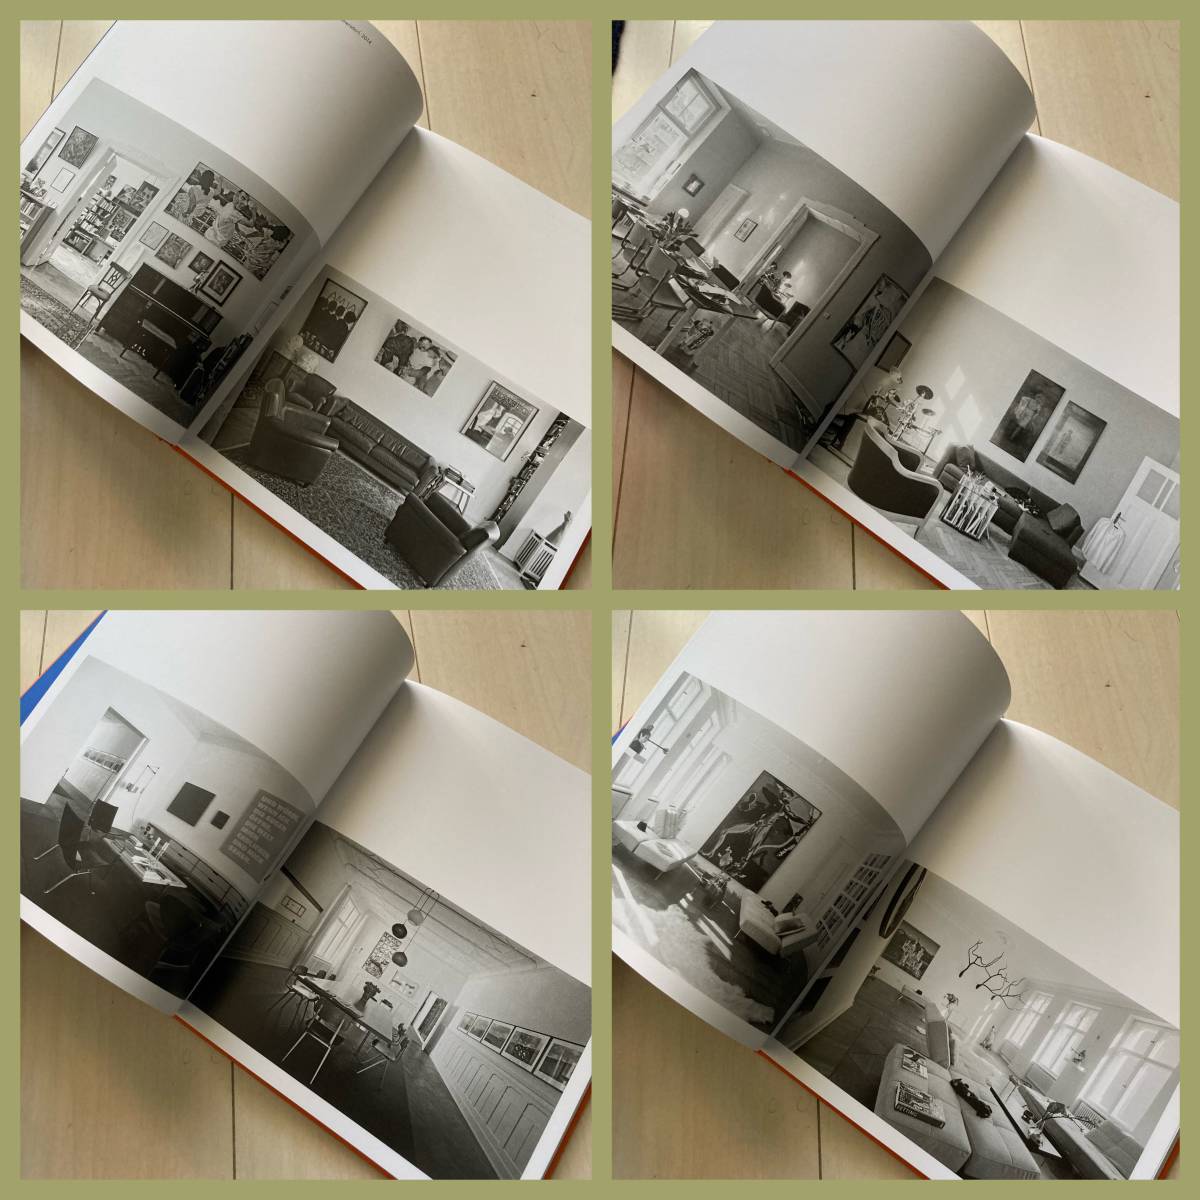  rare!!! interior foreign book [Berlin Living Rooms ]APARTAMENTO/a Pal ta men to